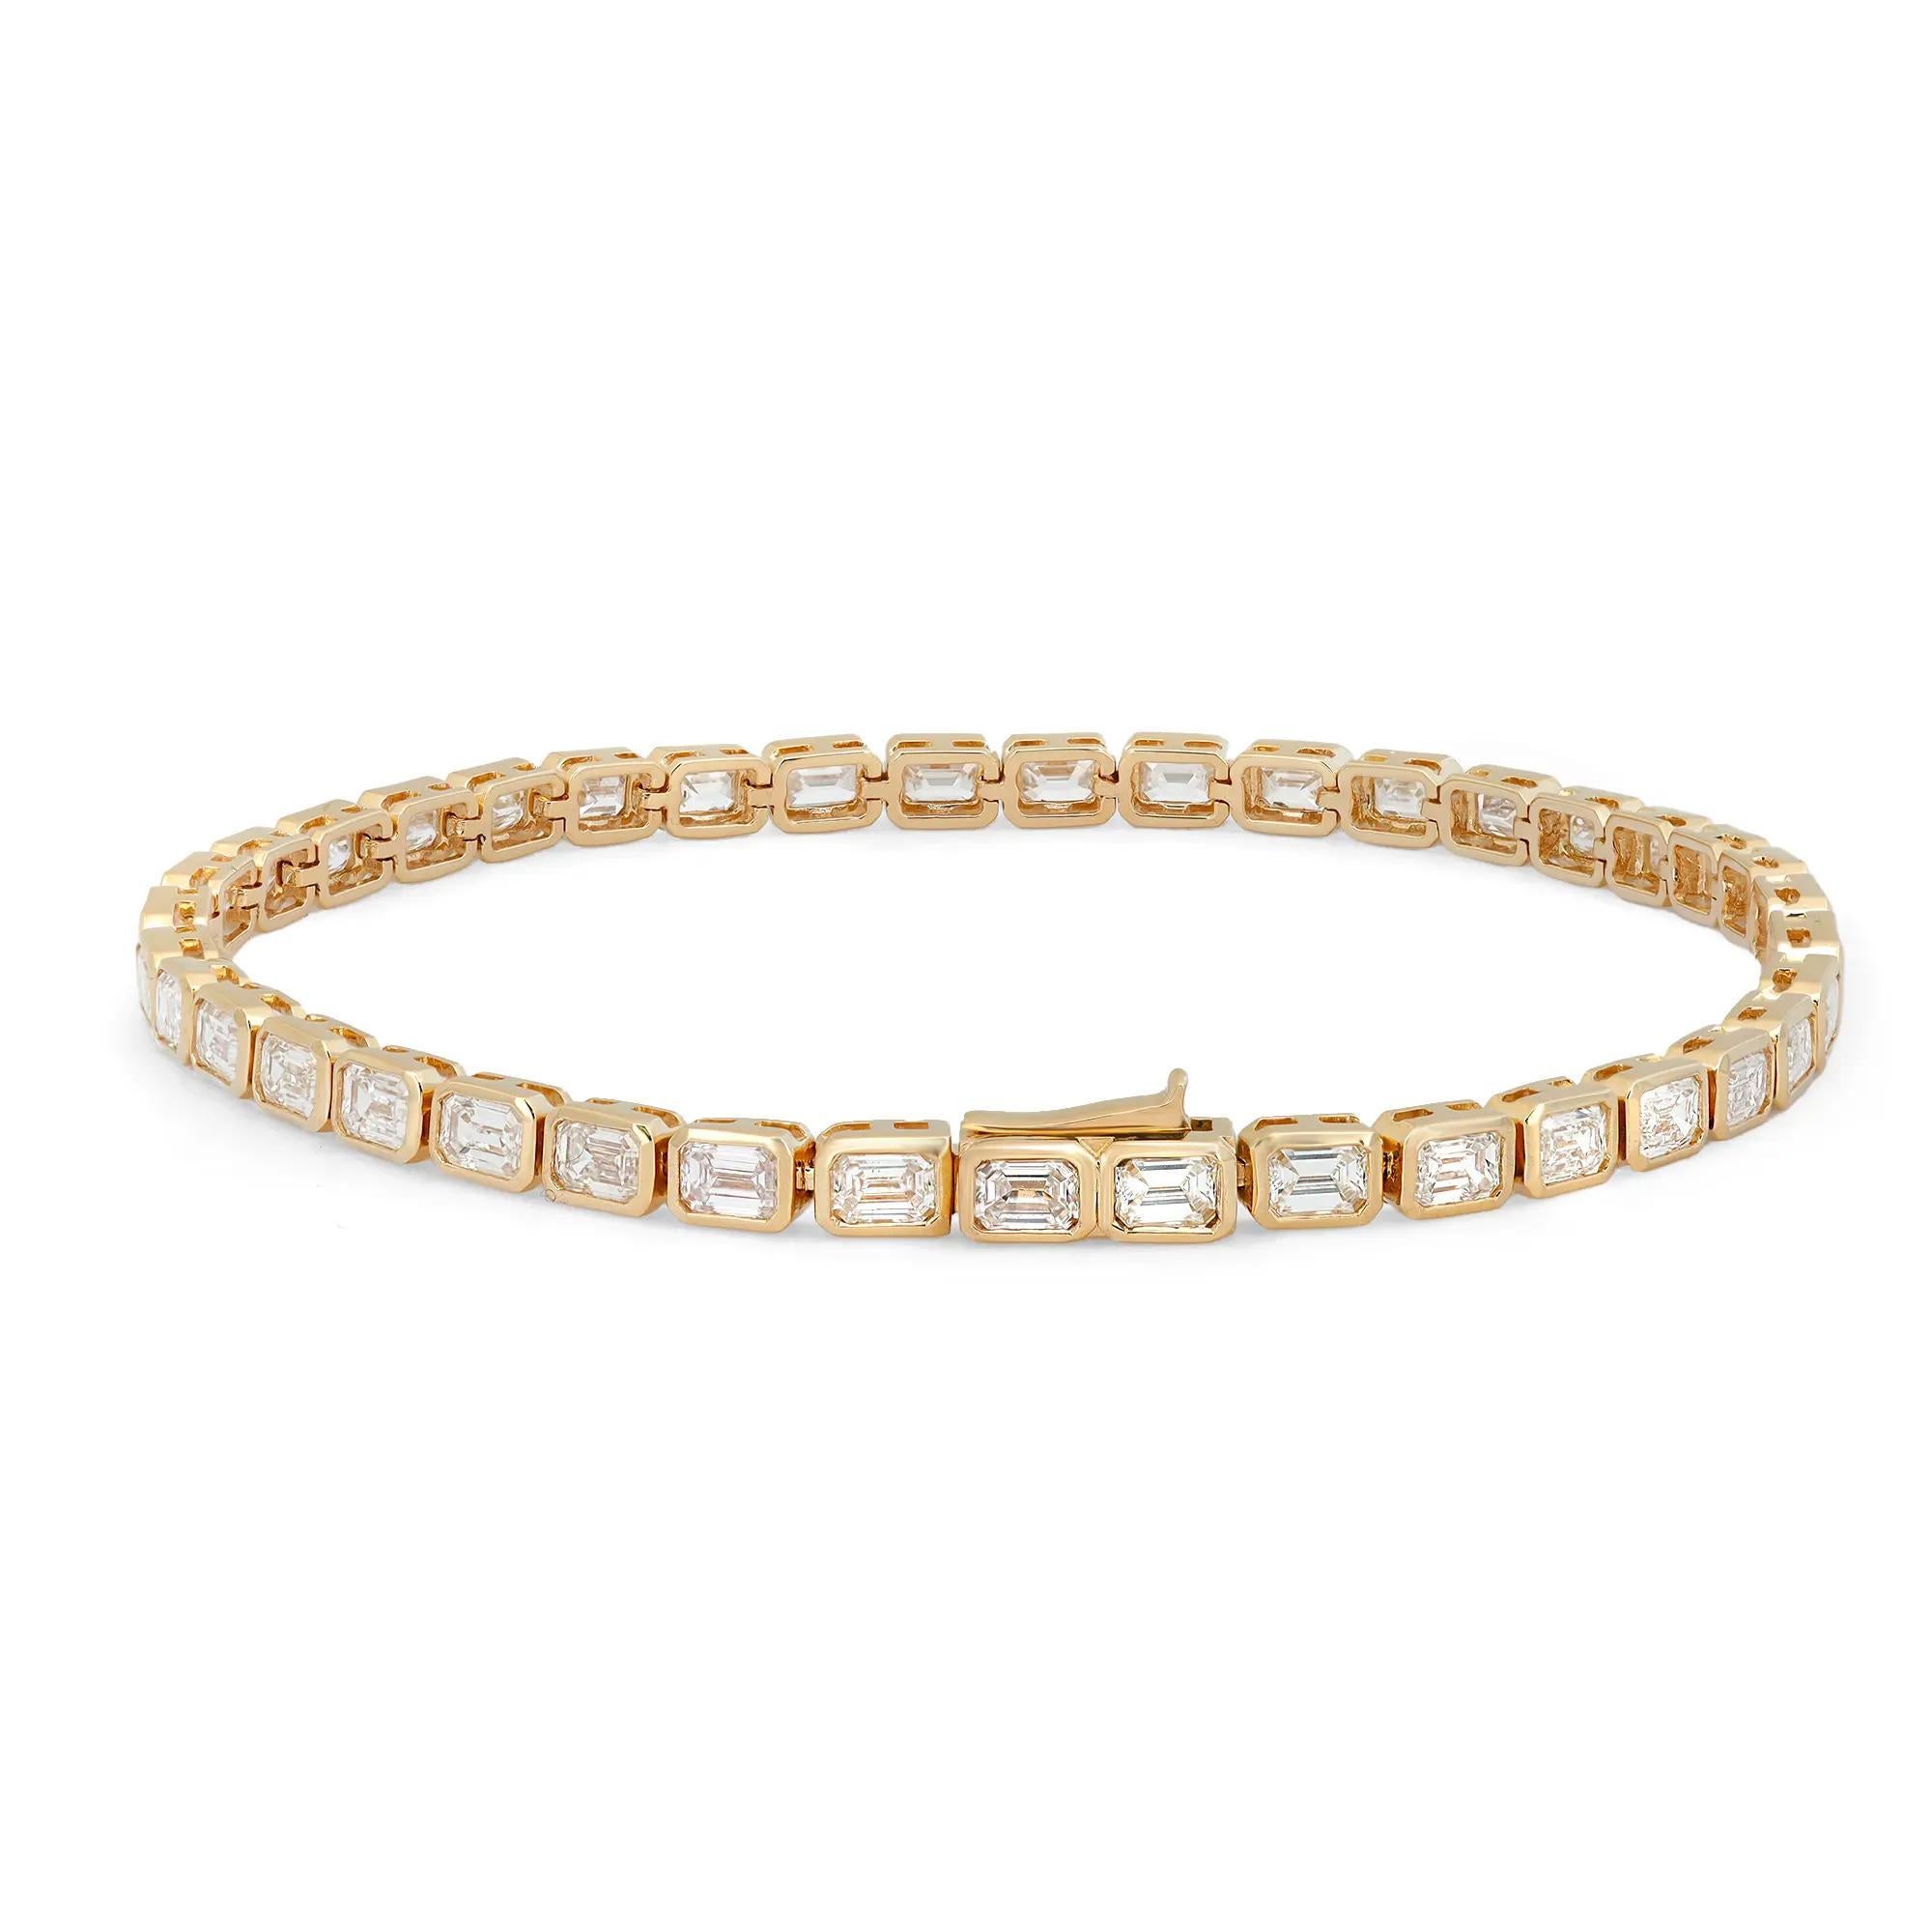 Faites l'expérience de l'élégance intemporelle avec notre bracelet tennis à lunette est-ouest en diamant taille émeraude de 5,16 carats, méticuleusement réalisé en luxueux or jaune 18 carats. Ce bracelet redéfinit la beauté classique avec des